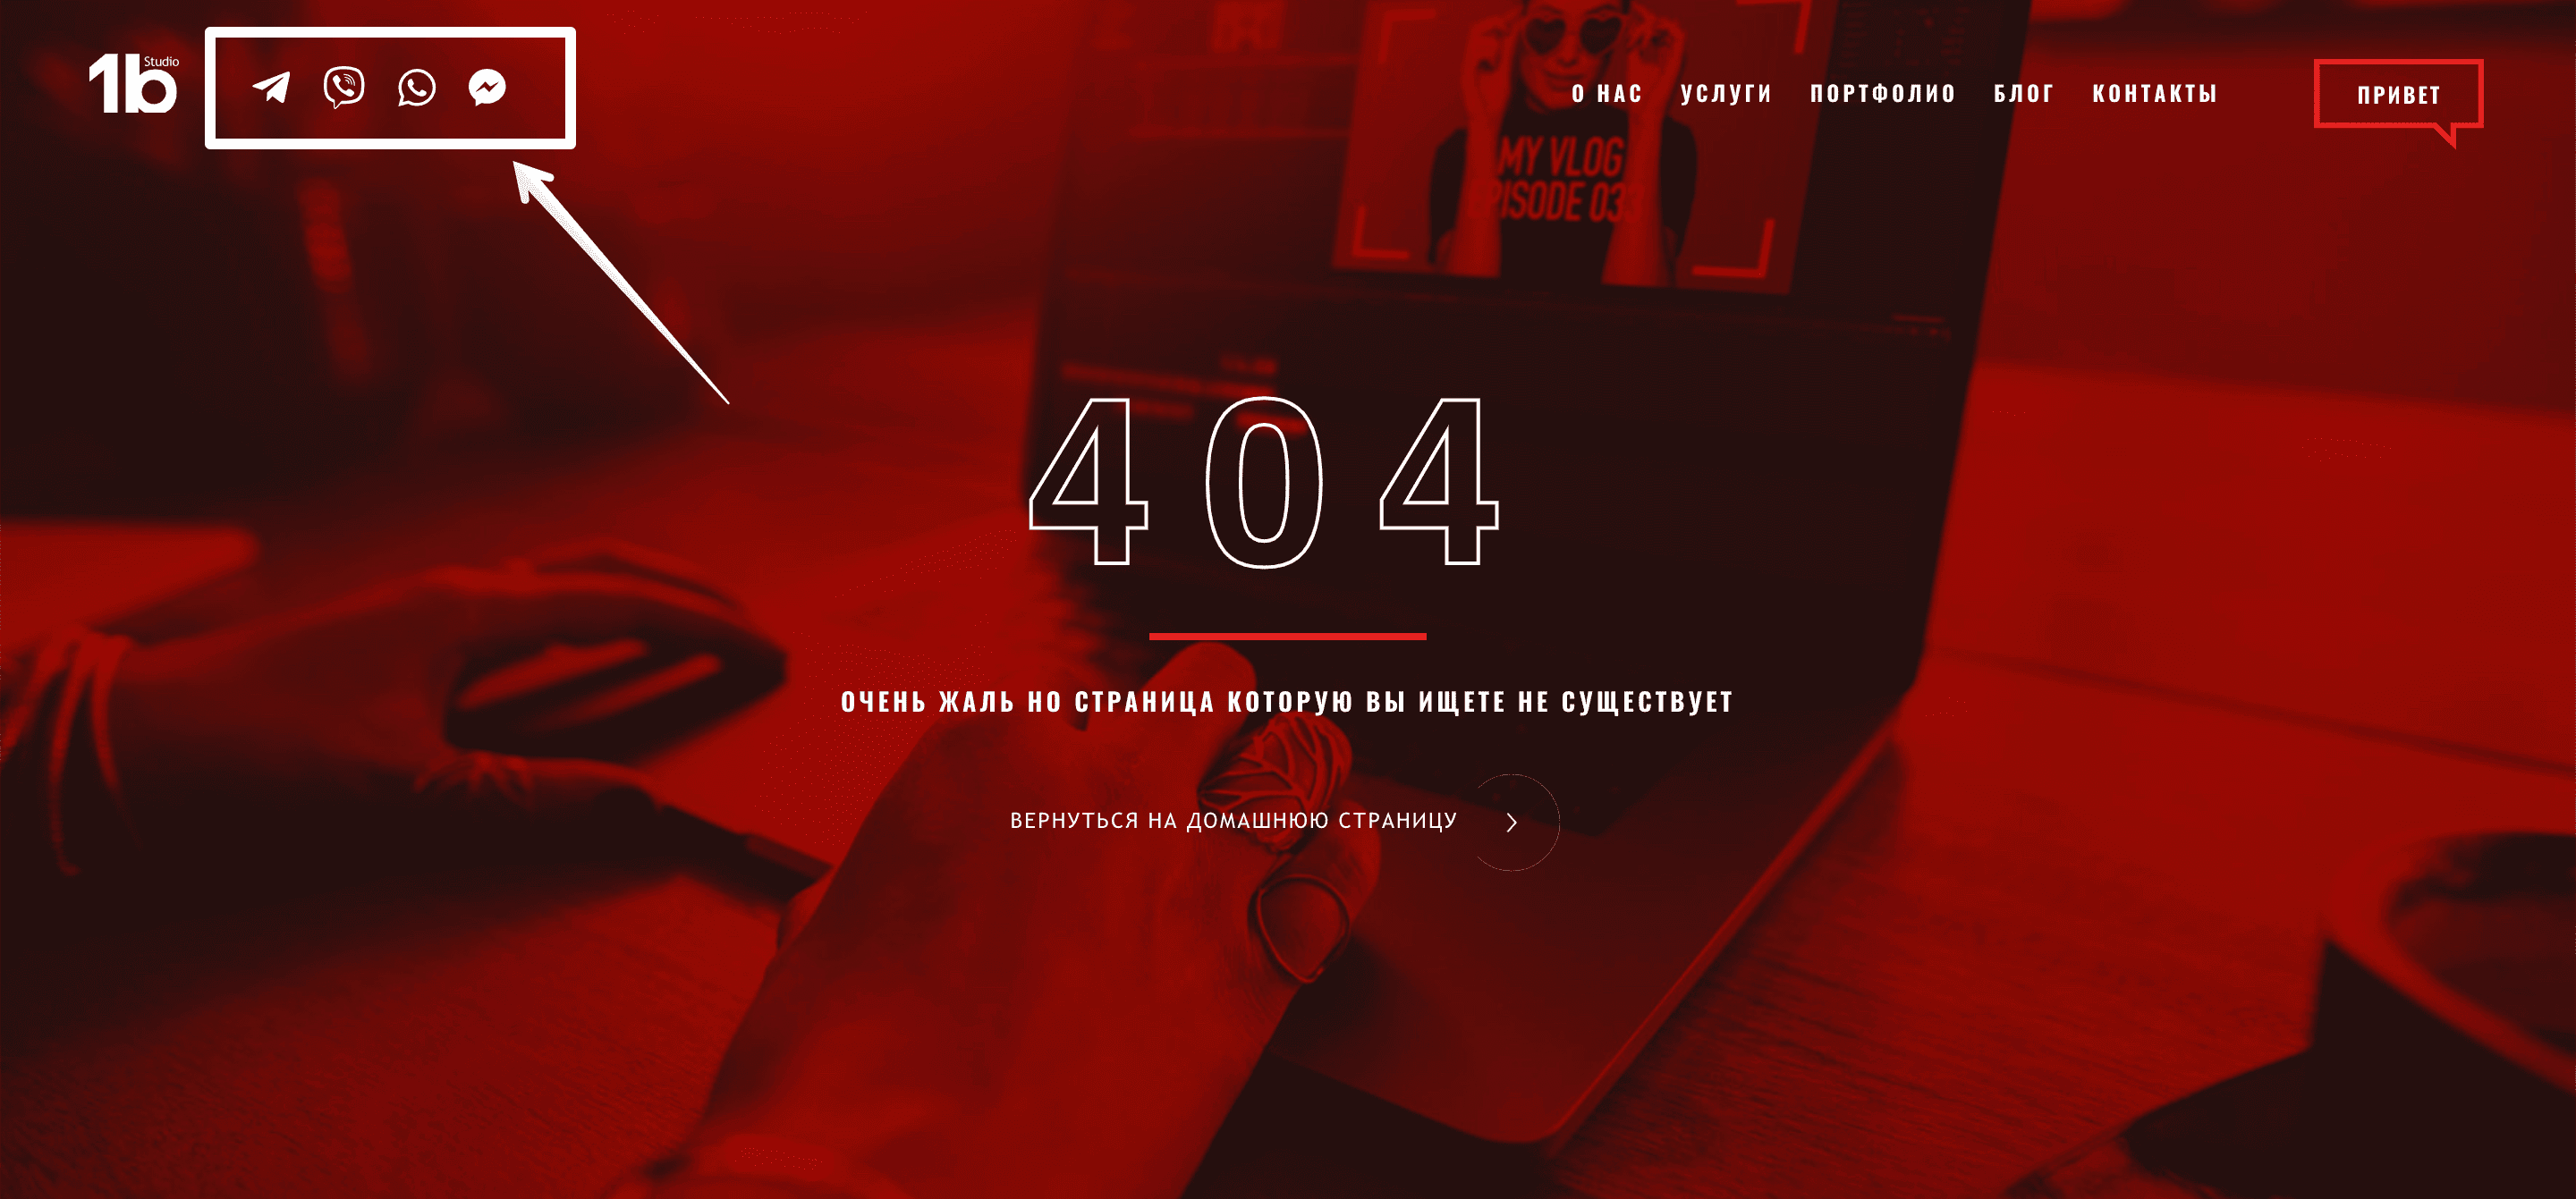 Пример страницы 404 с формой обратной связи